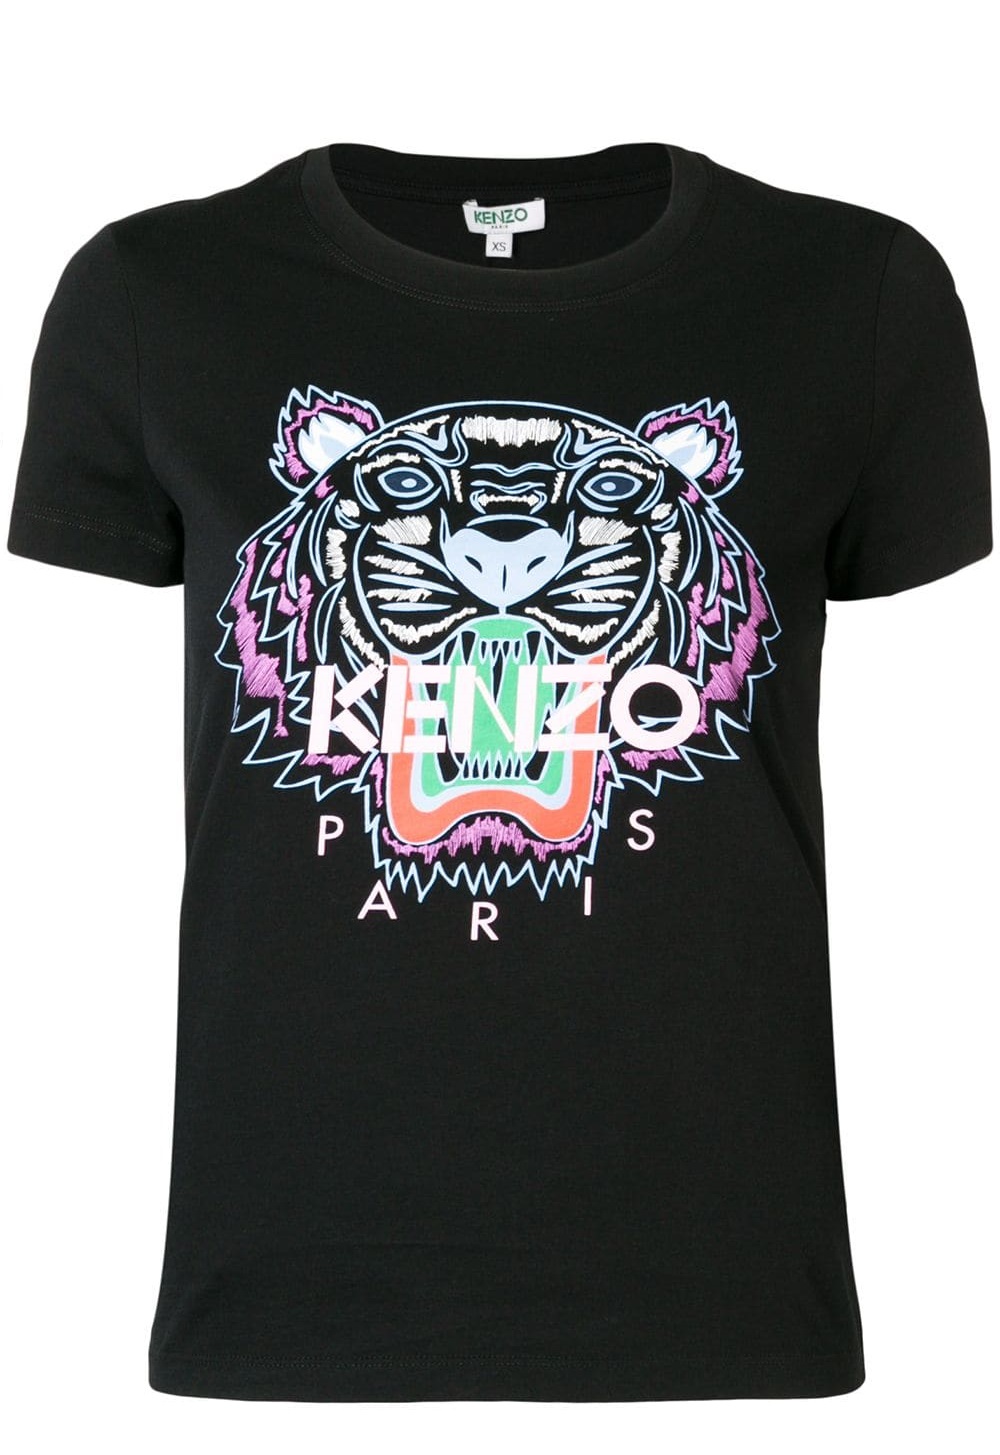 kenzo shirt black